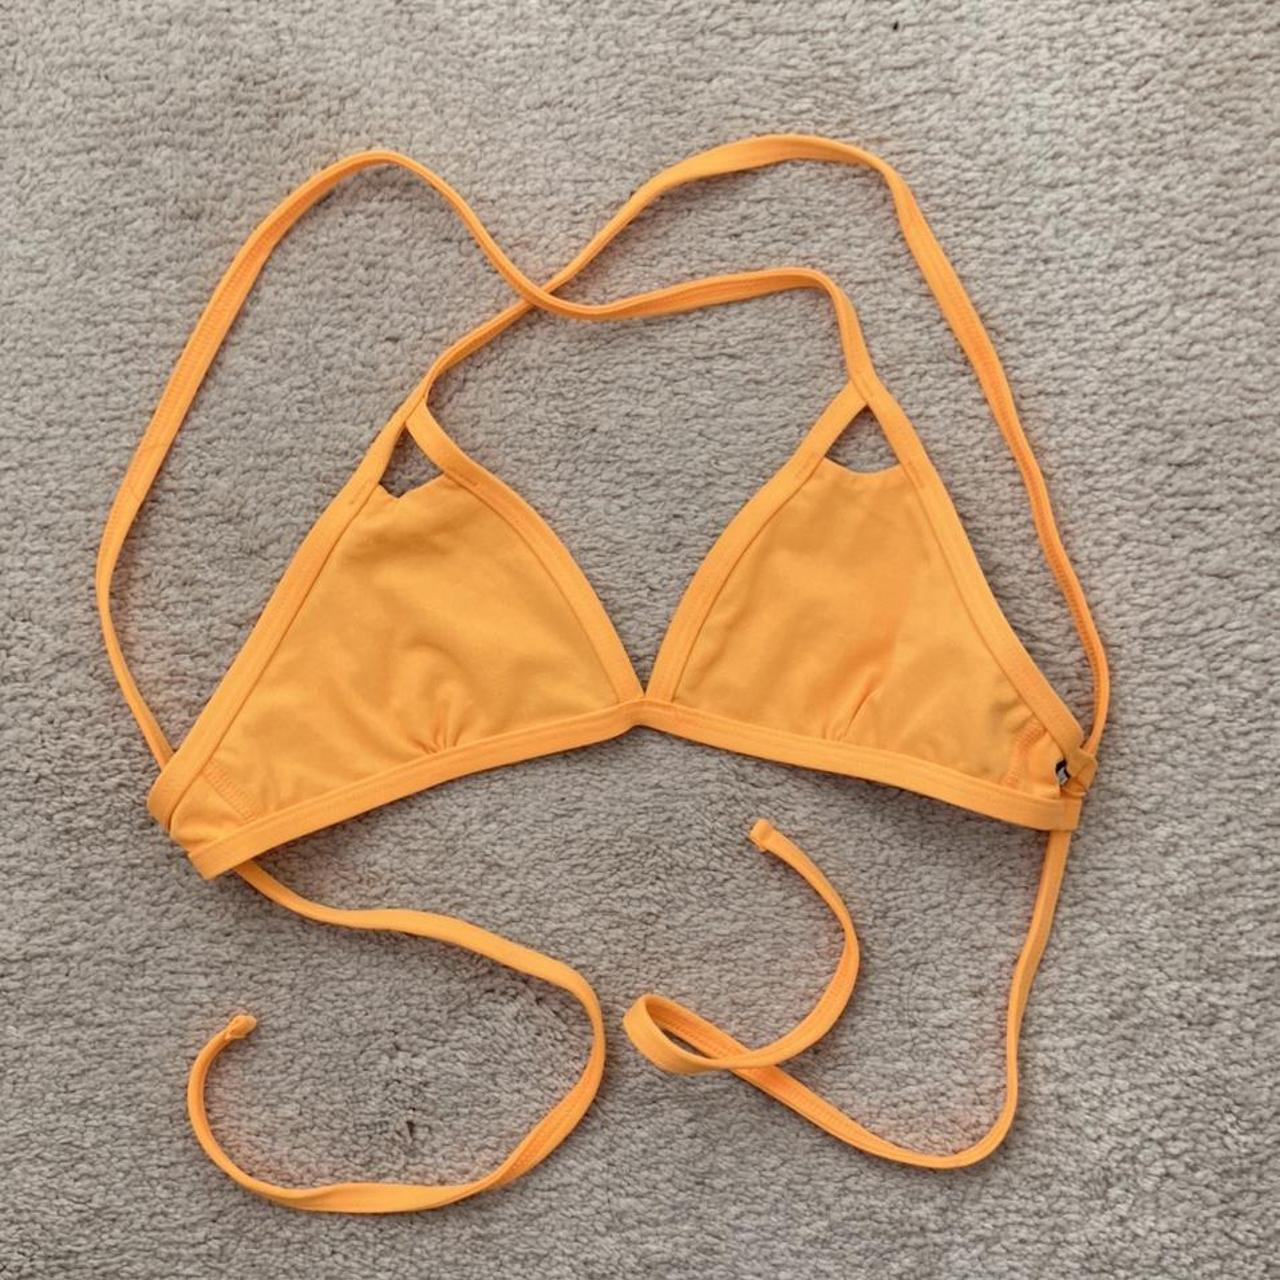 Jolyn ‘Finn’ bikini top in mango Size small, only... - Depop